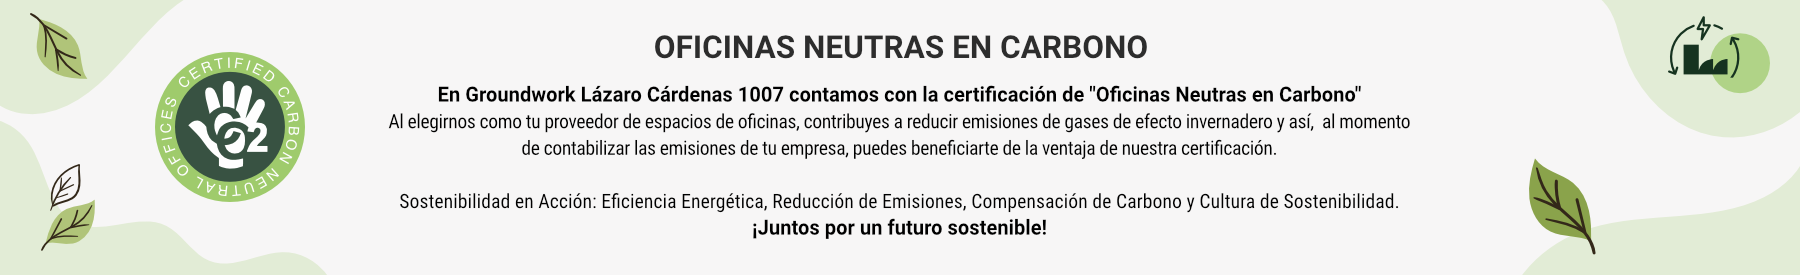 Certificación - Oficinas Neutras en Carbono